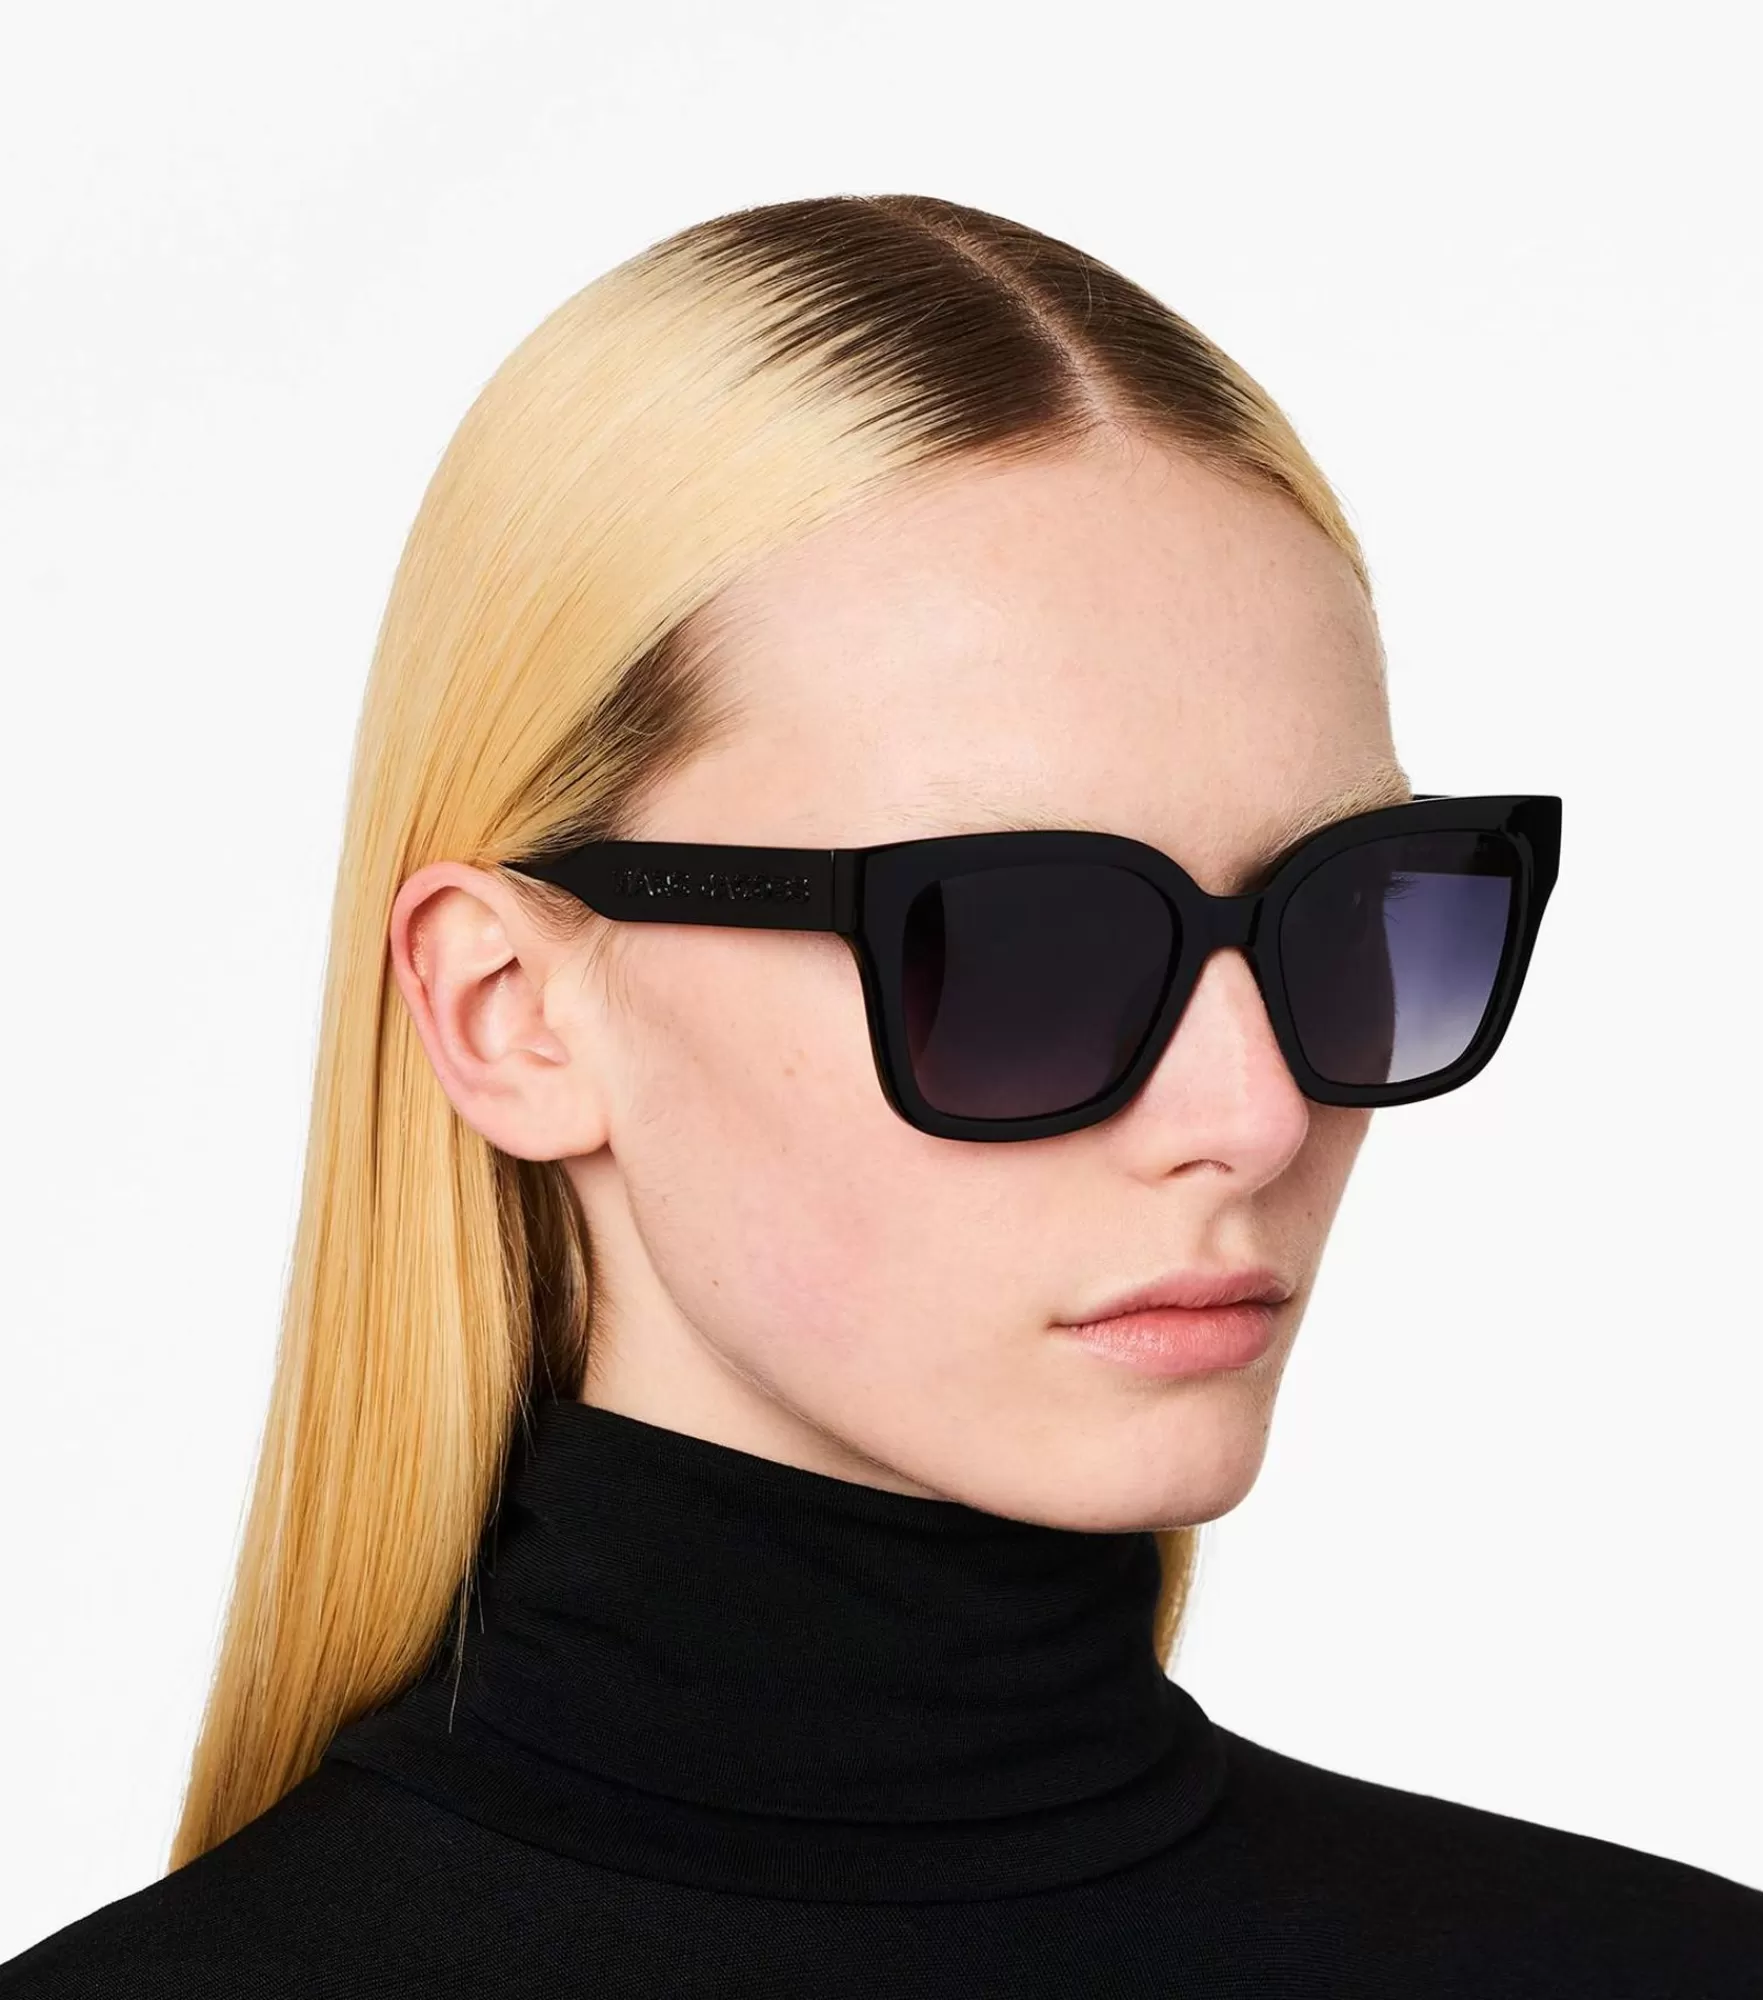 Marc Jacobs Square Sunglasses | Lunettes De Soleil